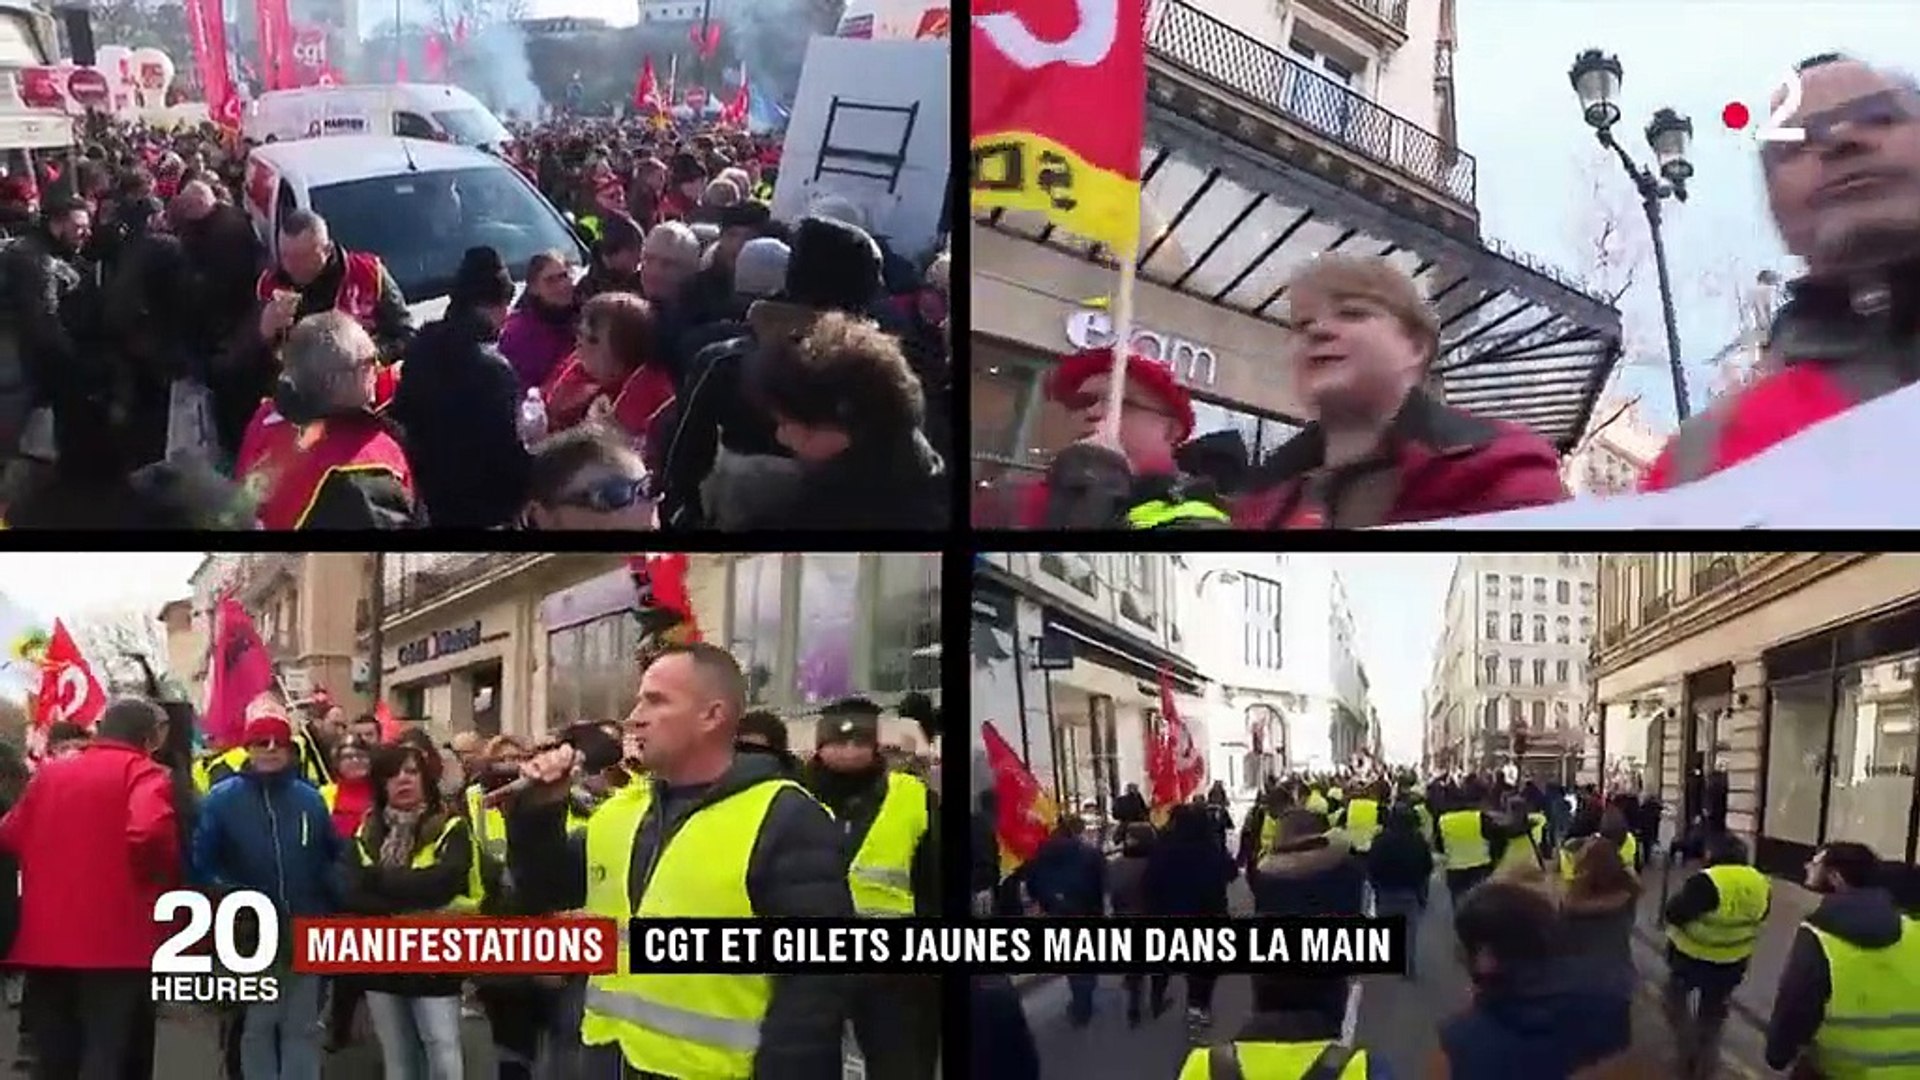 Manifestations : CGT et "gilets jaunes" marchent main dans la main - Vidéo  Dailymotion